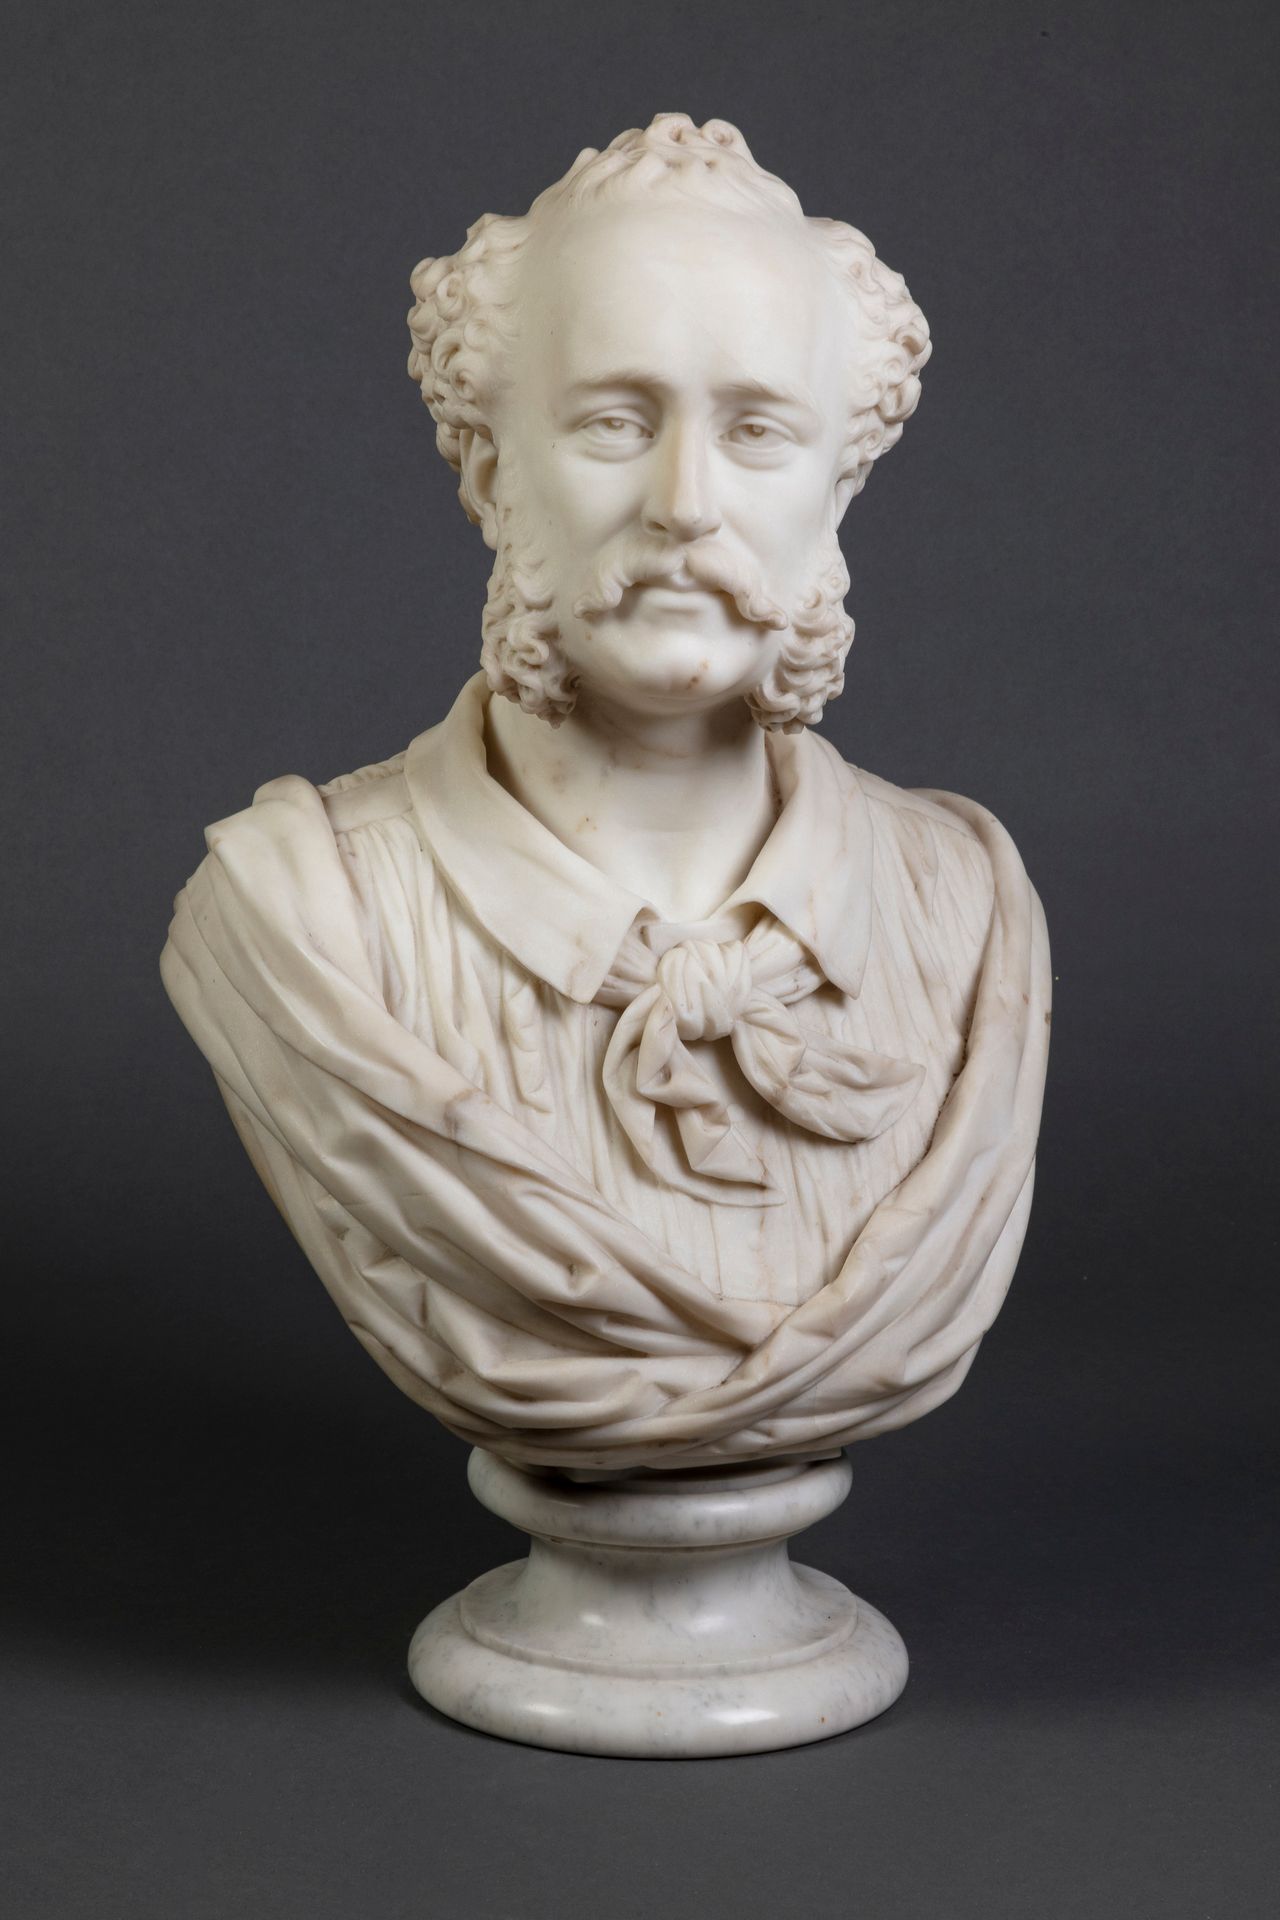 Null 奥古斯特-克莱辛格 (1814-1883)

有胡子的男人半身像

大理石，背面有签名和日期1870年

高度：75厘米